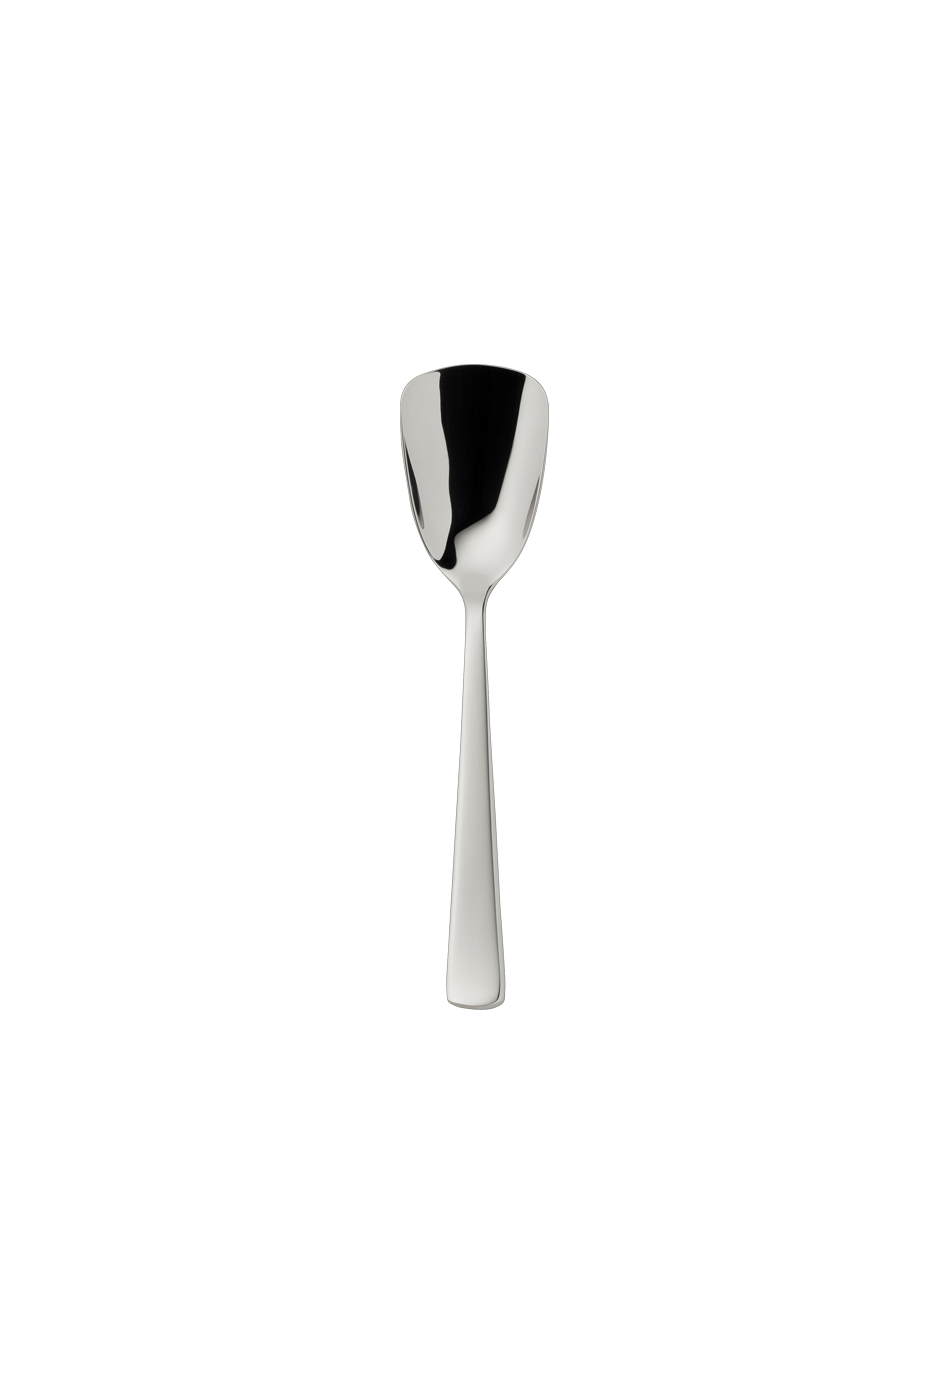 Atlantic Brillant Sugar Spoon (18/8 stainless steel)